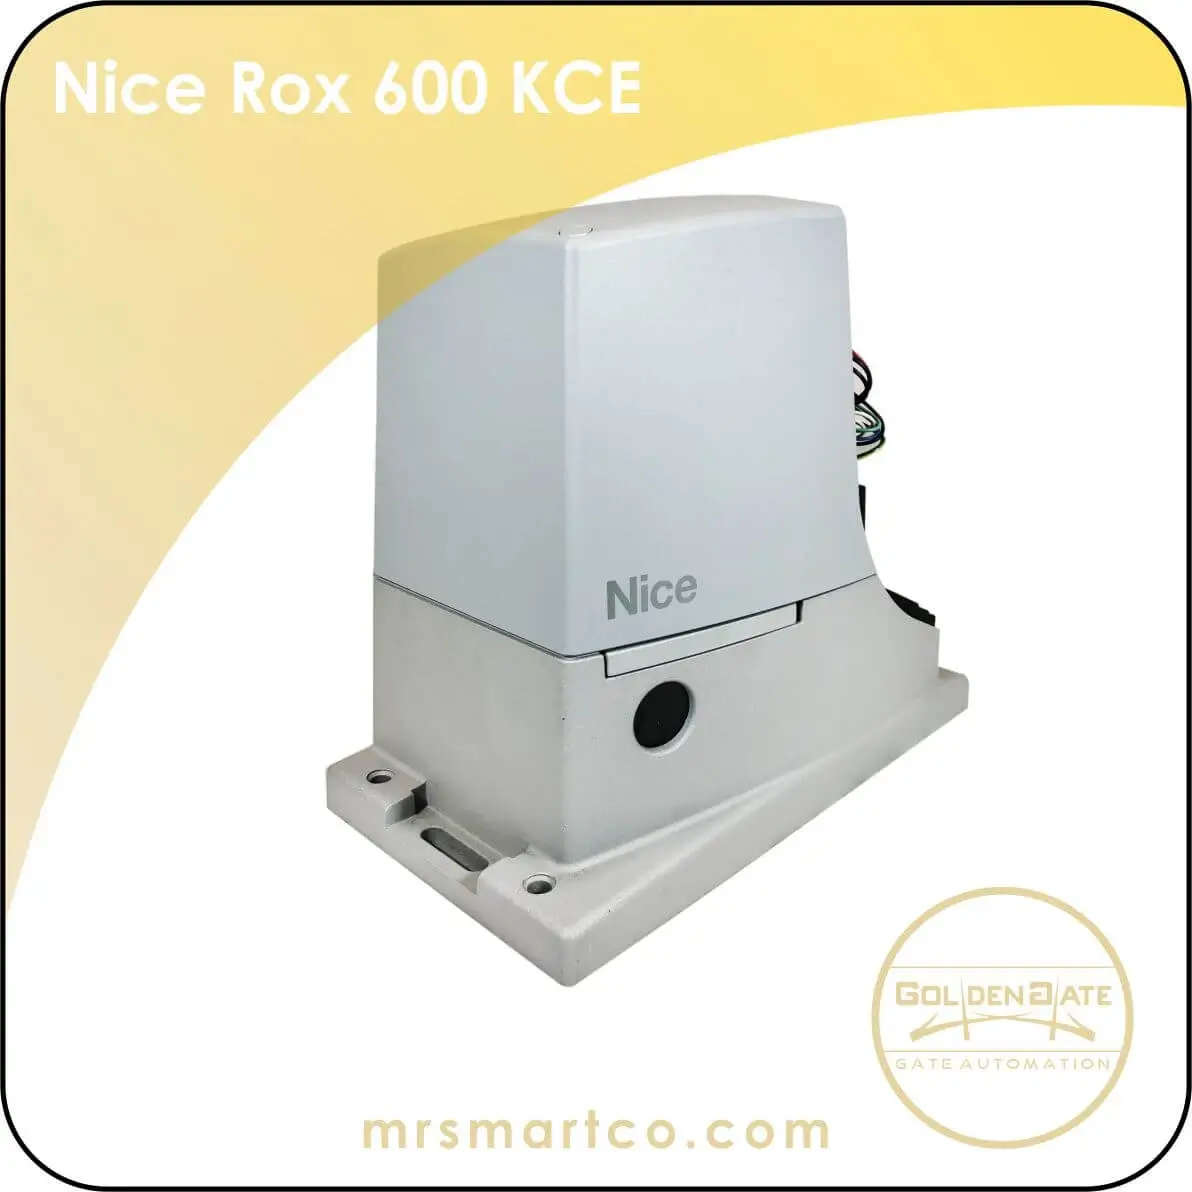 Nice Rox 600 KCE